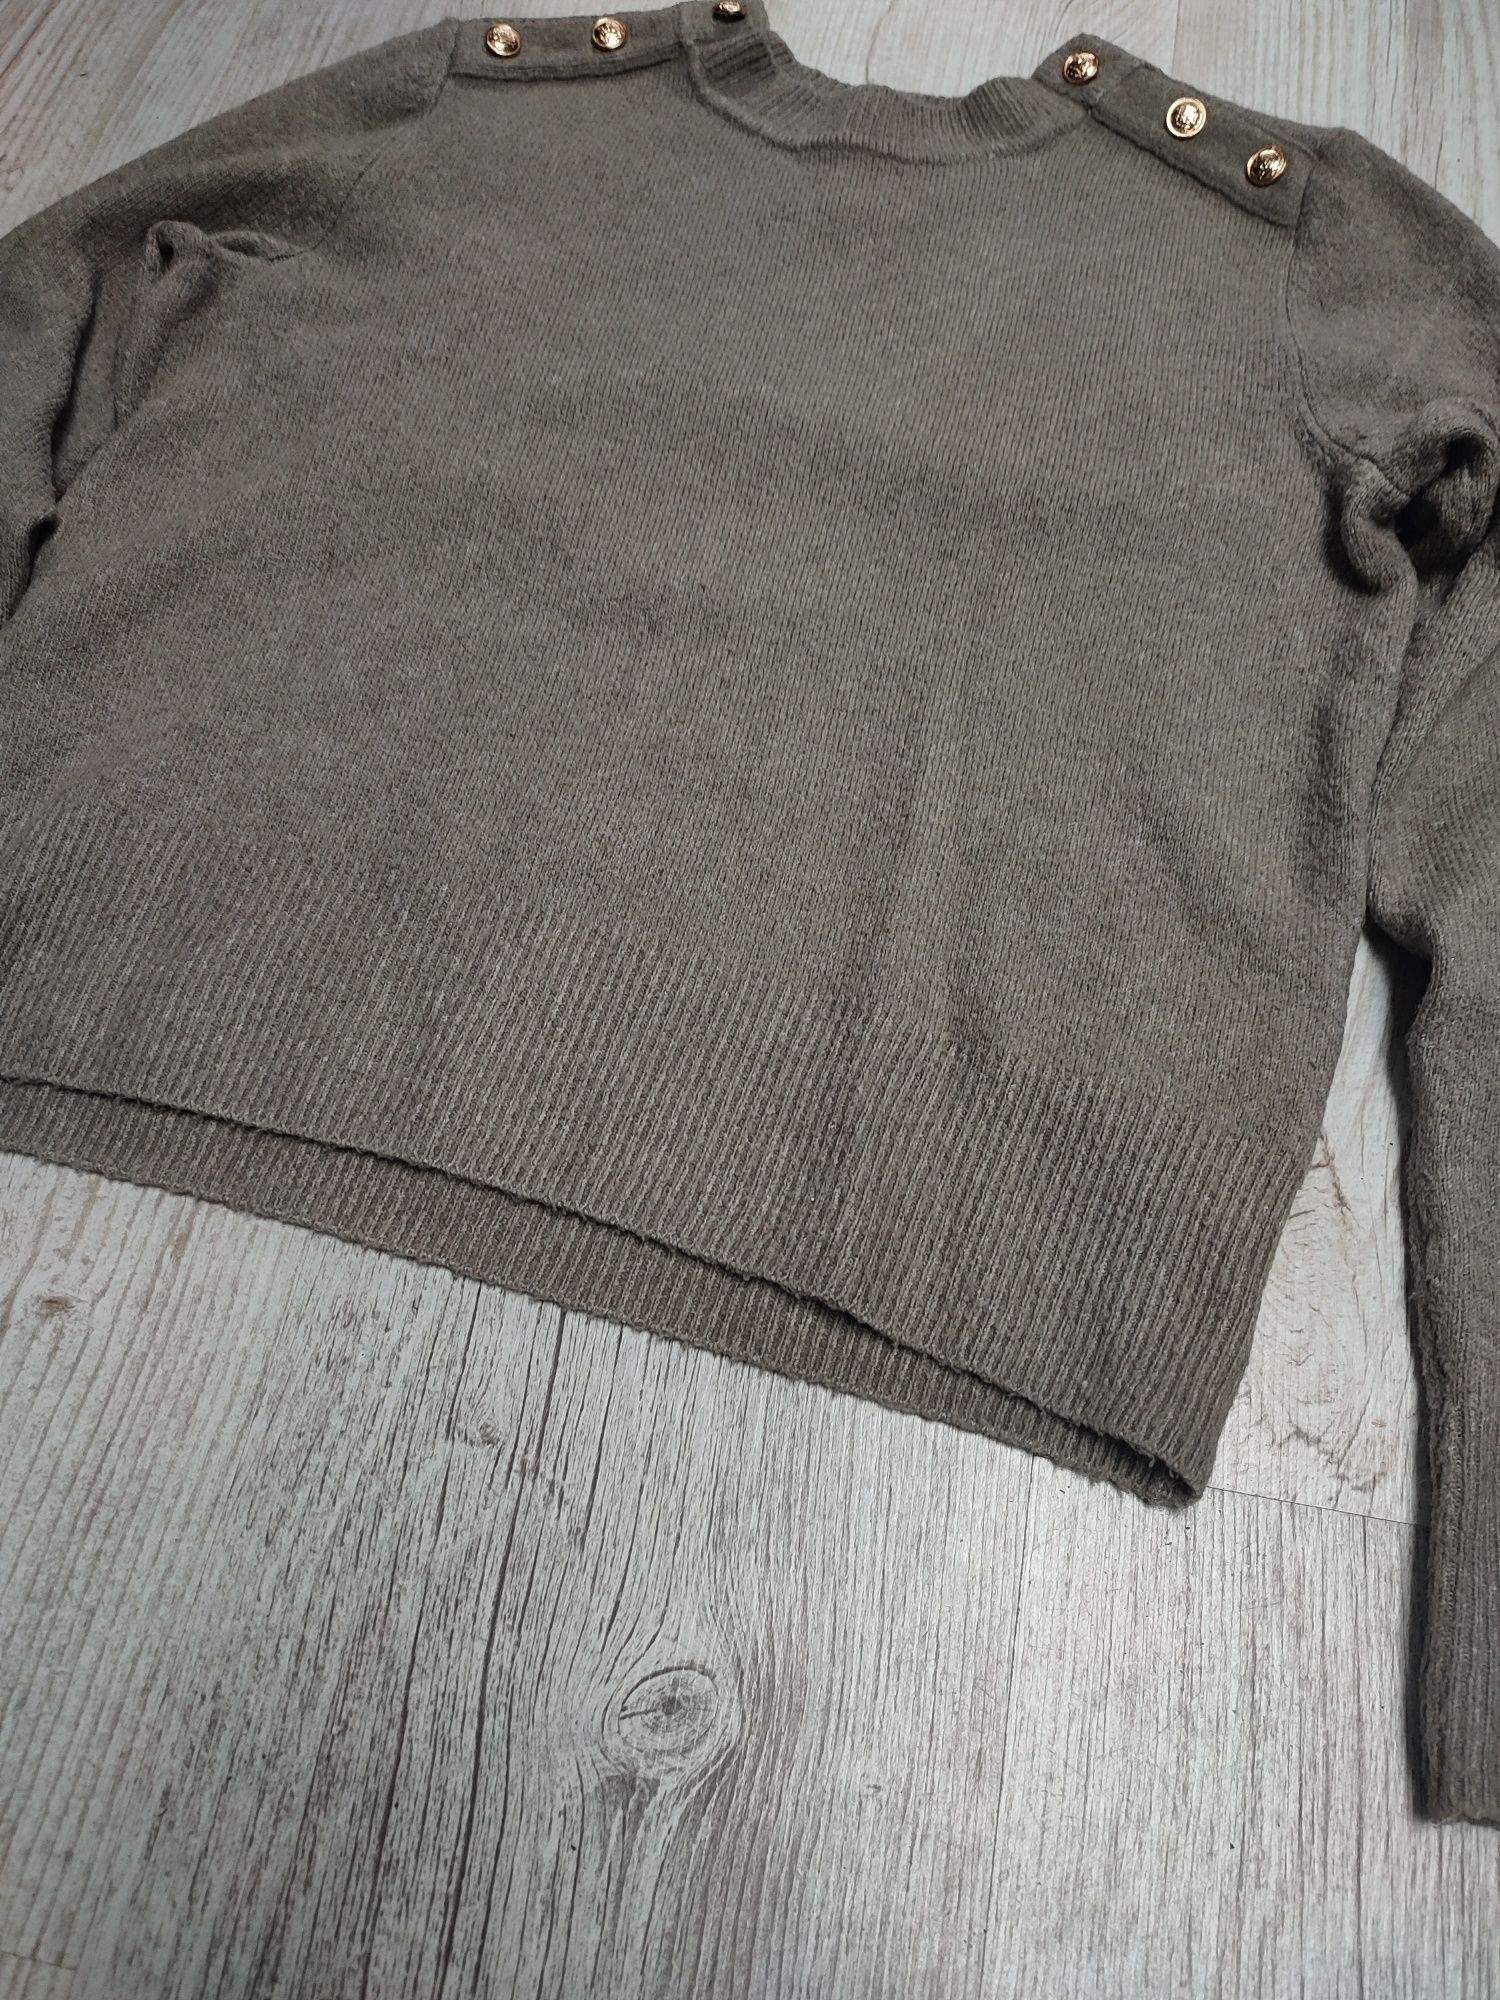 H&M S 36 sweter damski krótki crop top sweterek złoto guziki wełna